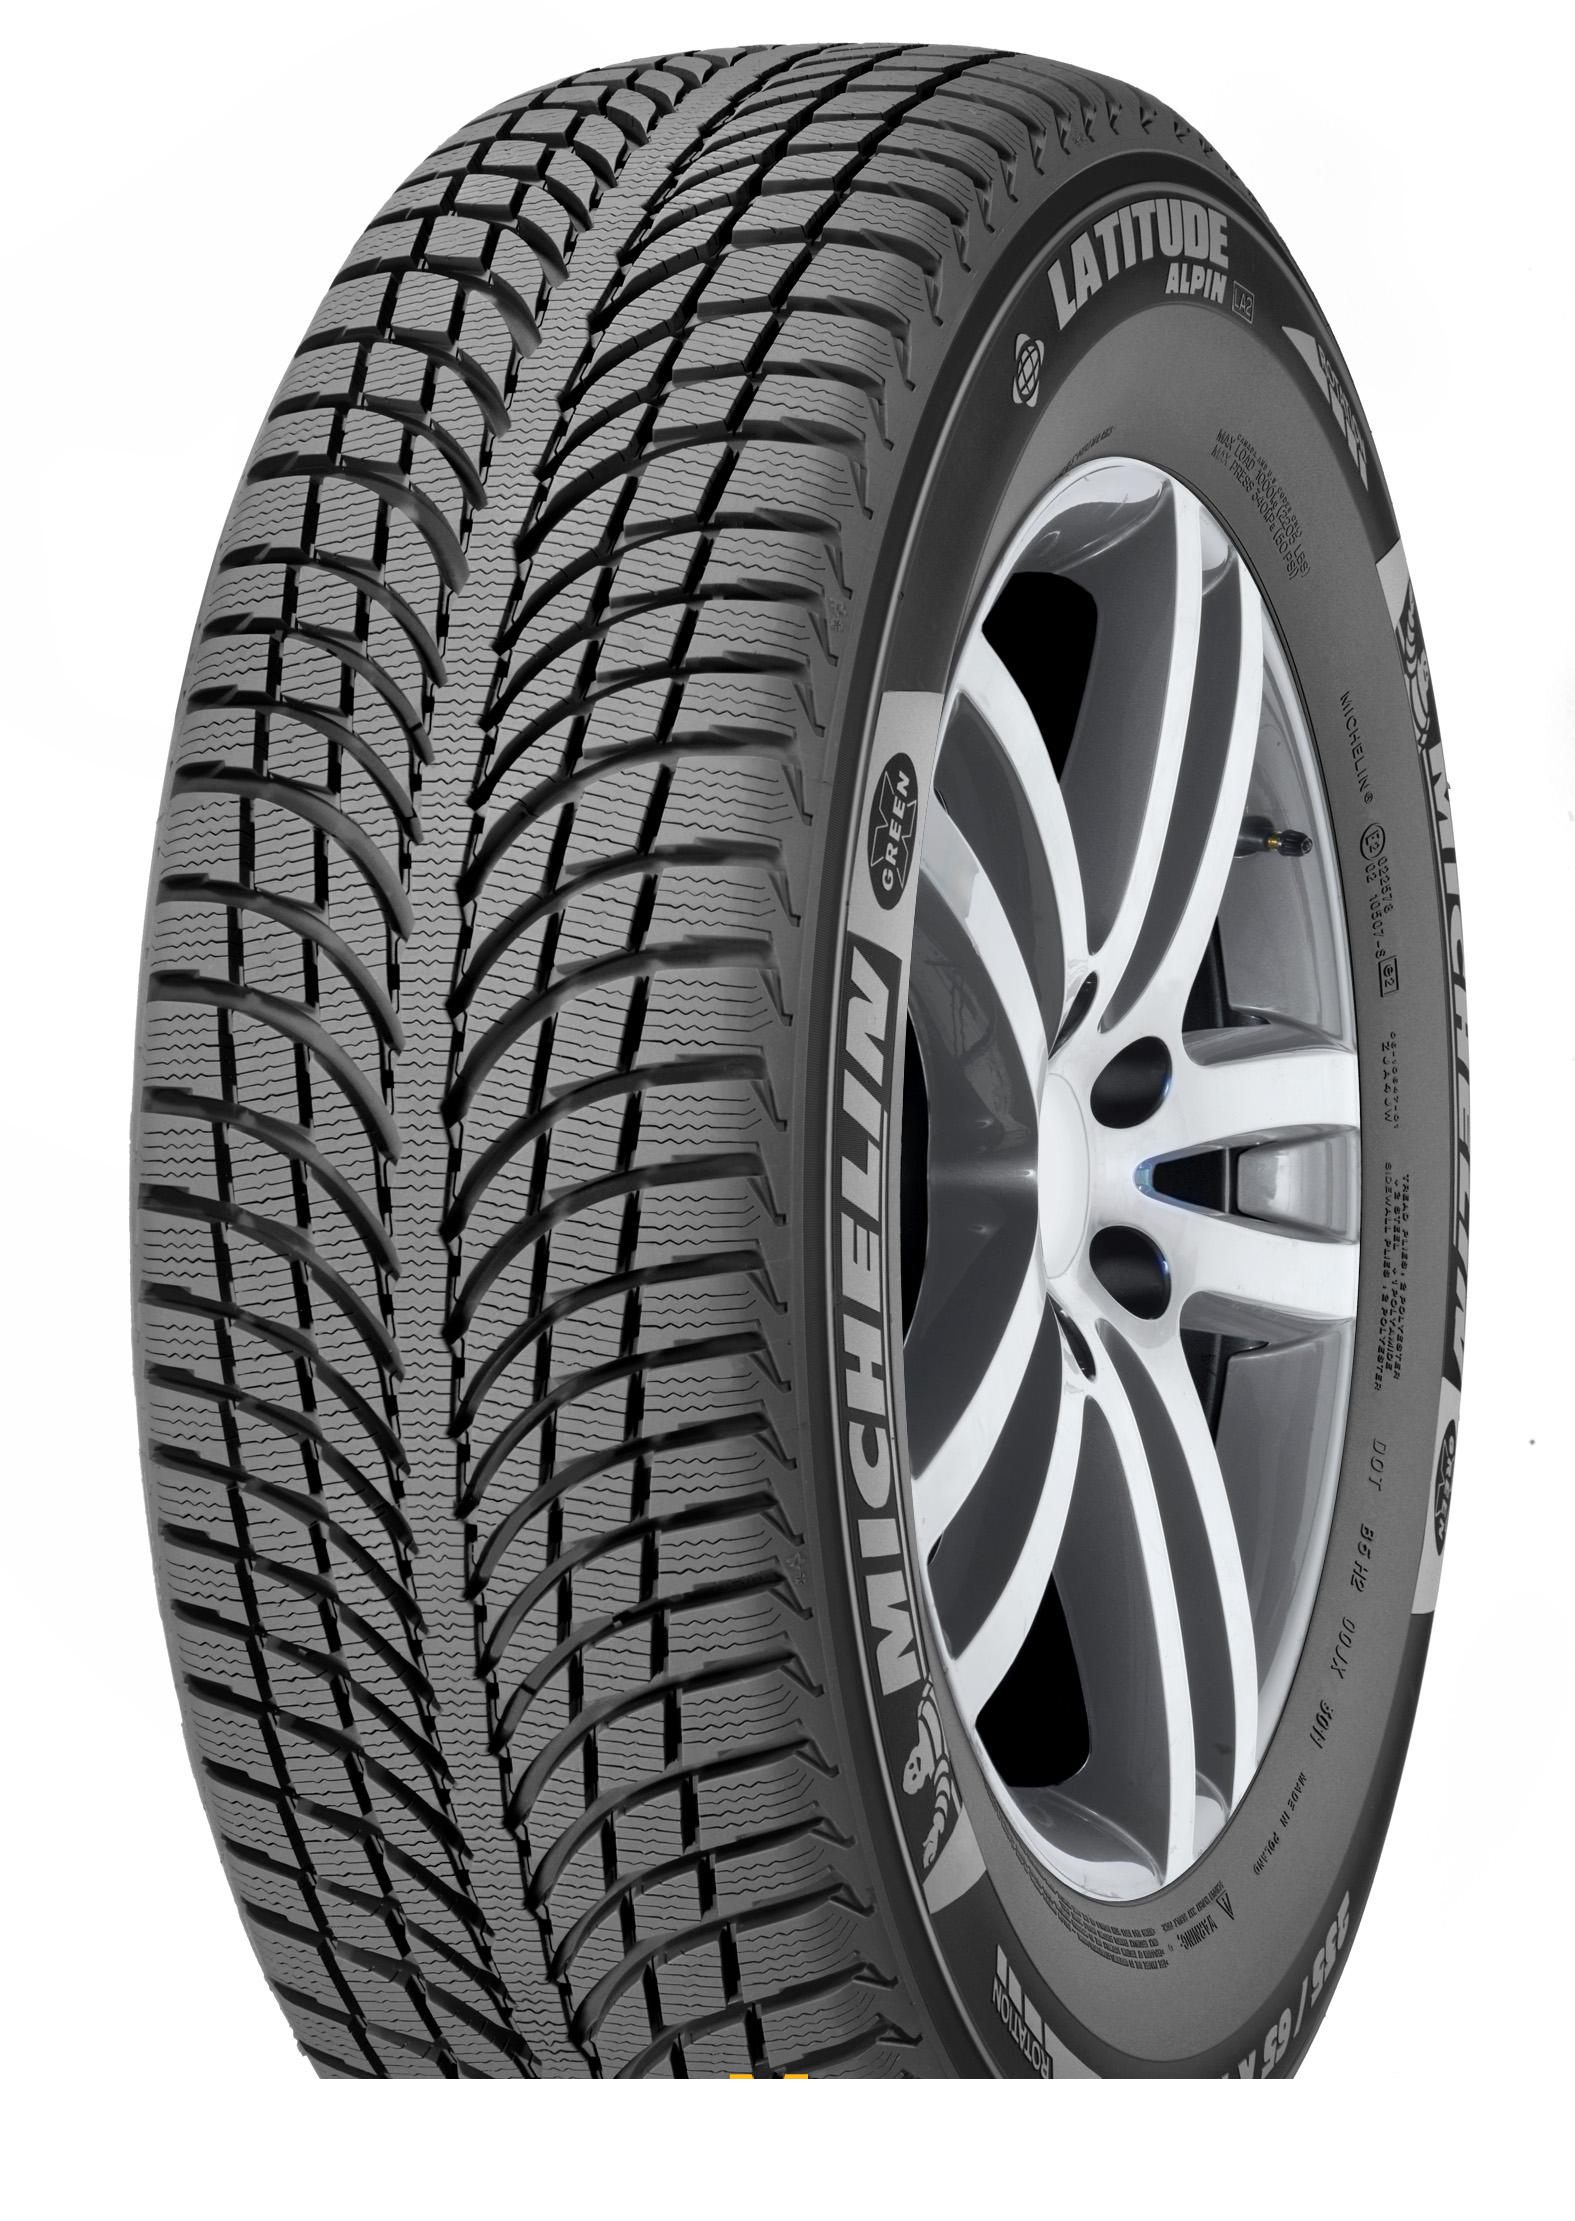 Tire Michelin Latitude Alpin 2 275/40R20 106V - picture, photo, image